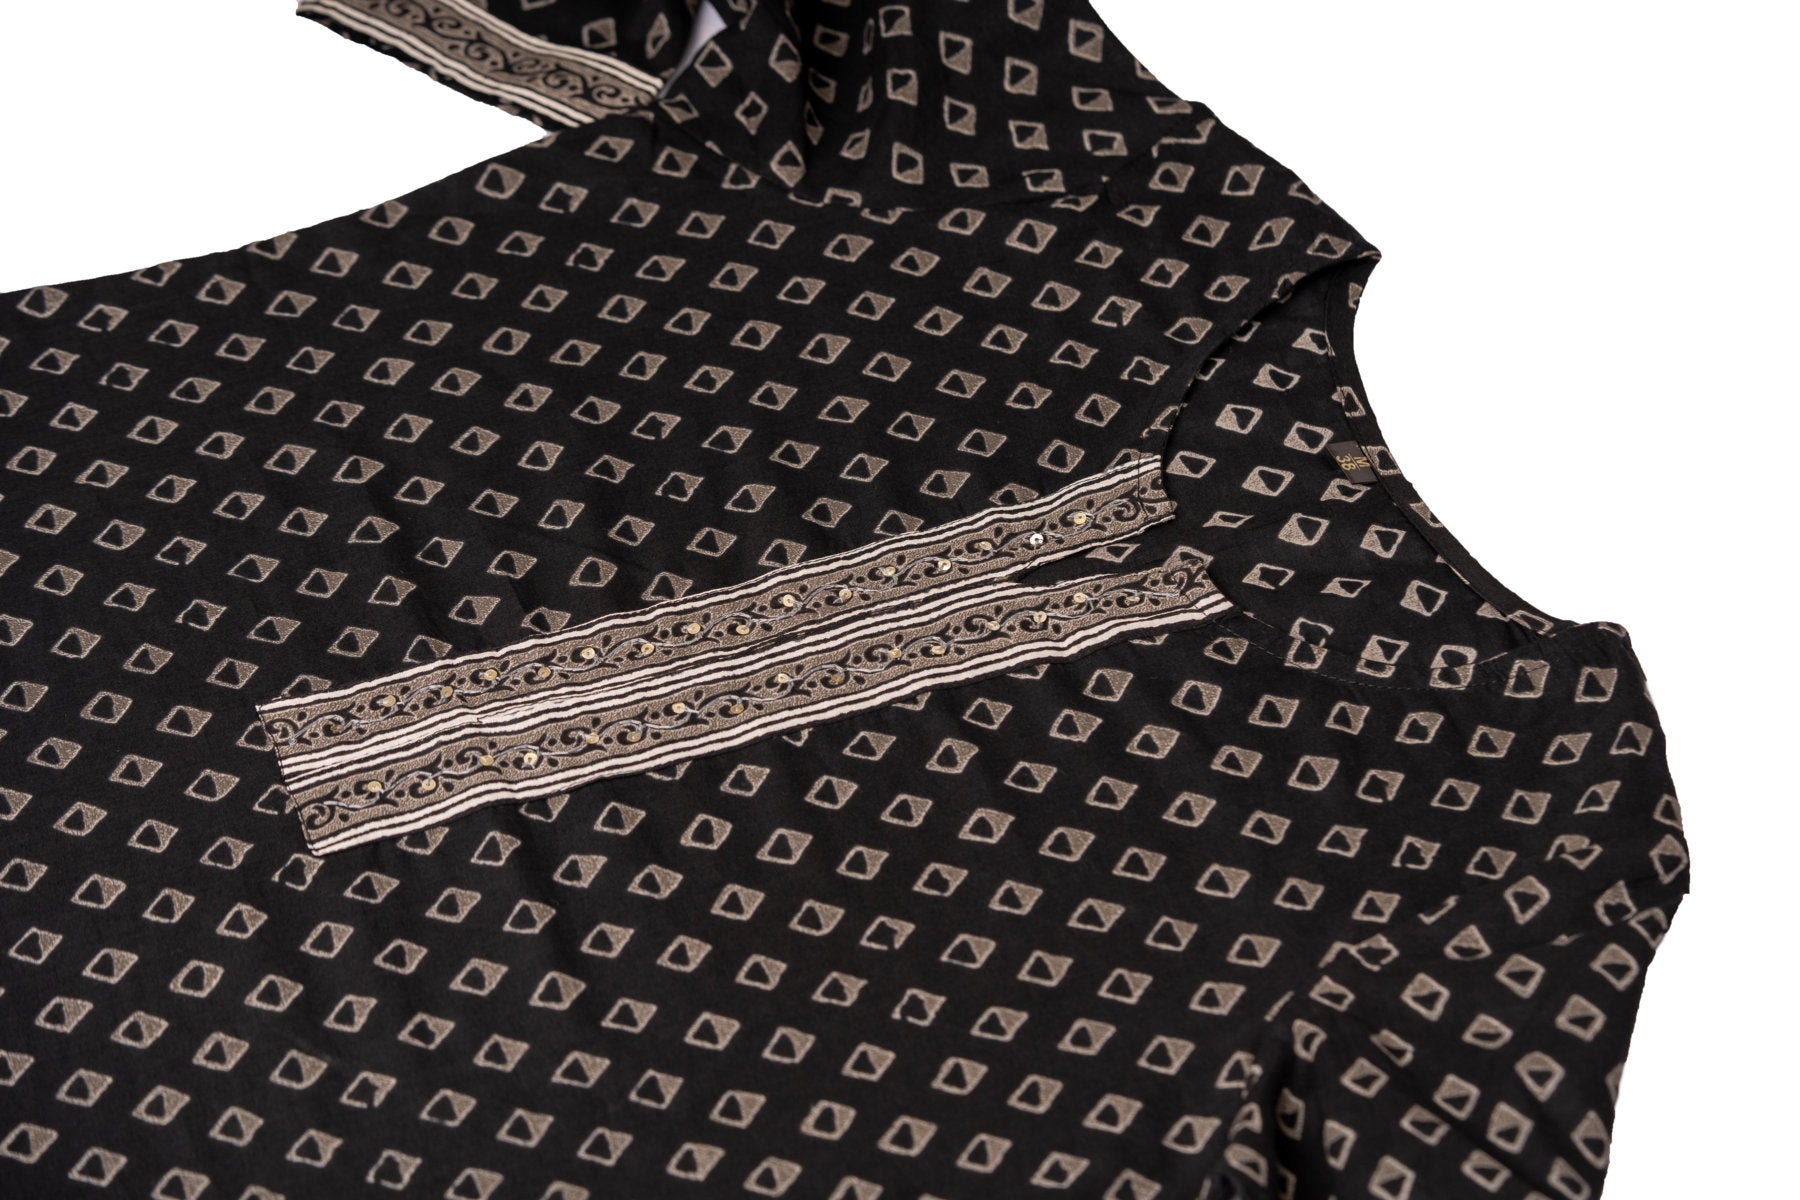 3 Piece Salwar - 100% Cotton black salwar with grey prints. Black 2 metre long dupatta and pants with grey ikkat design and floral print